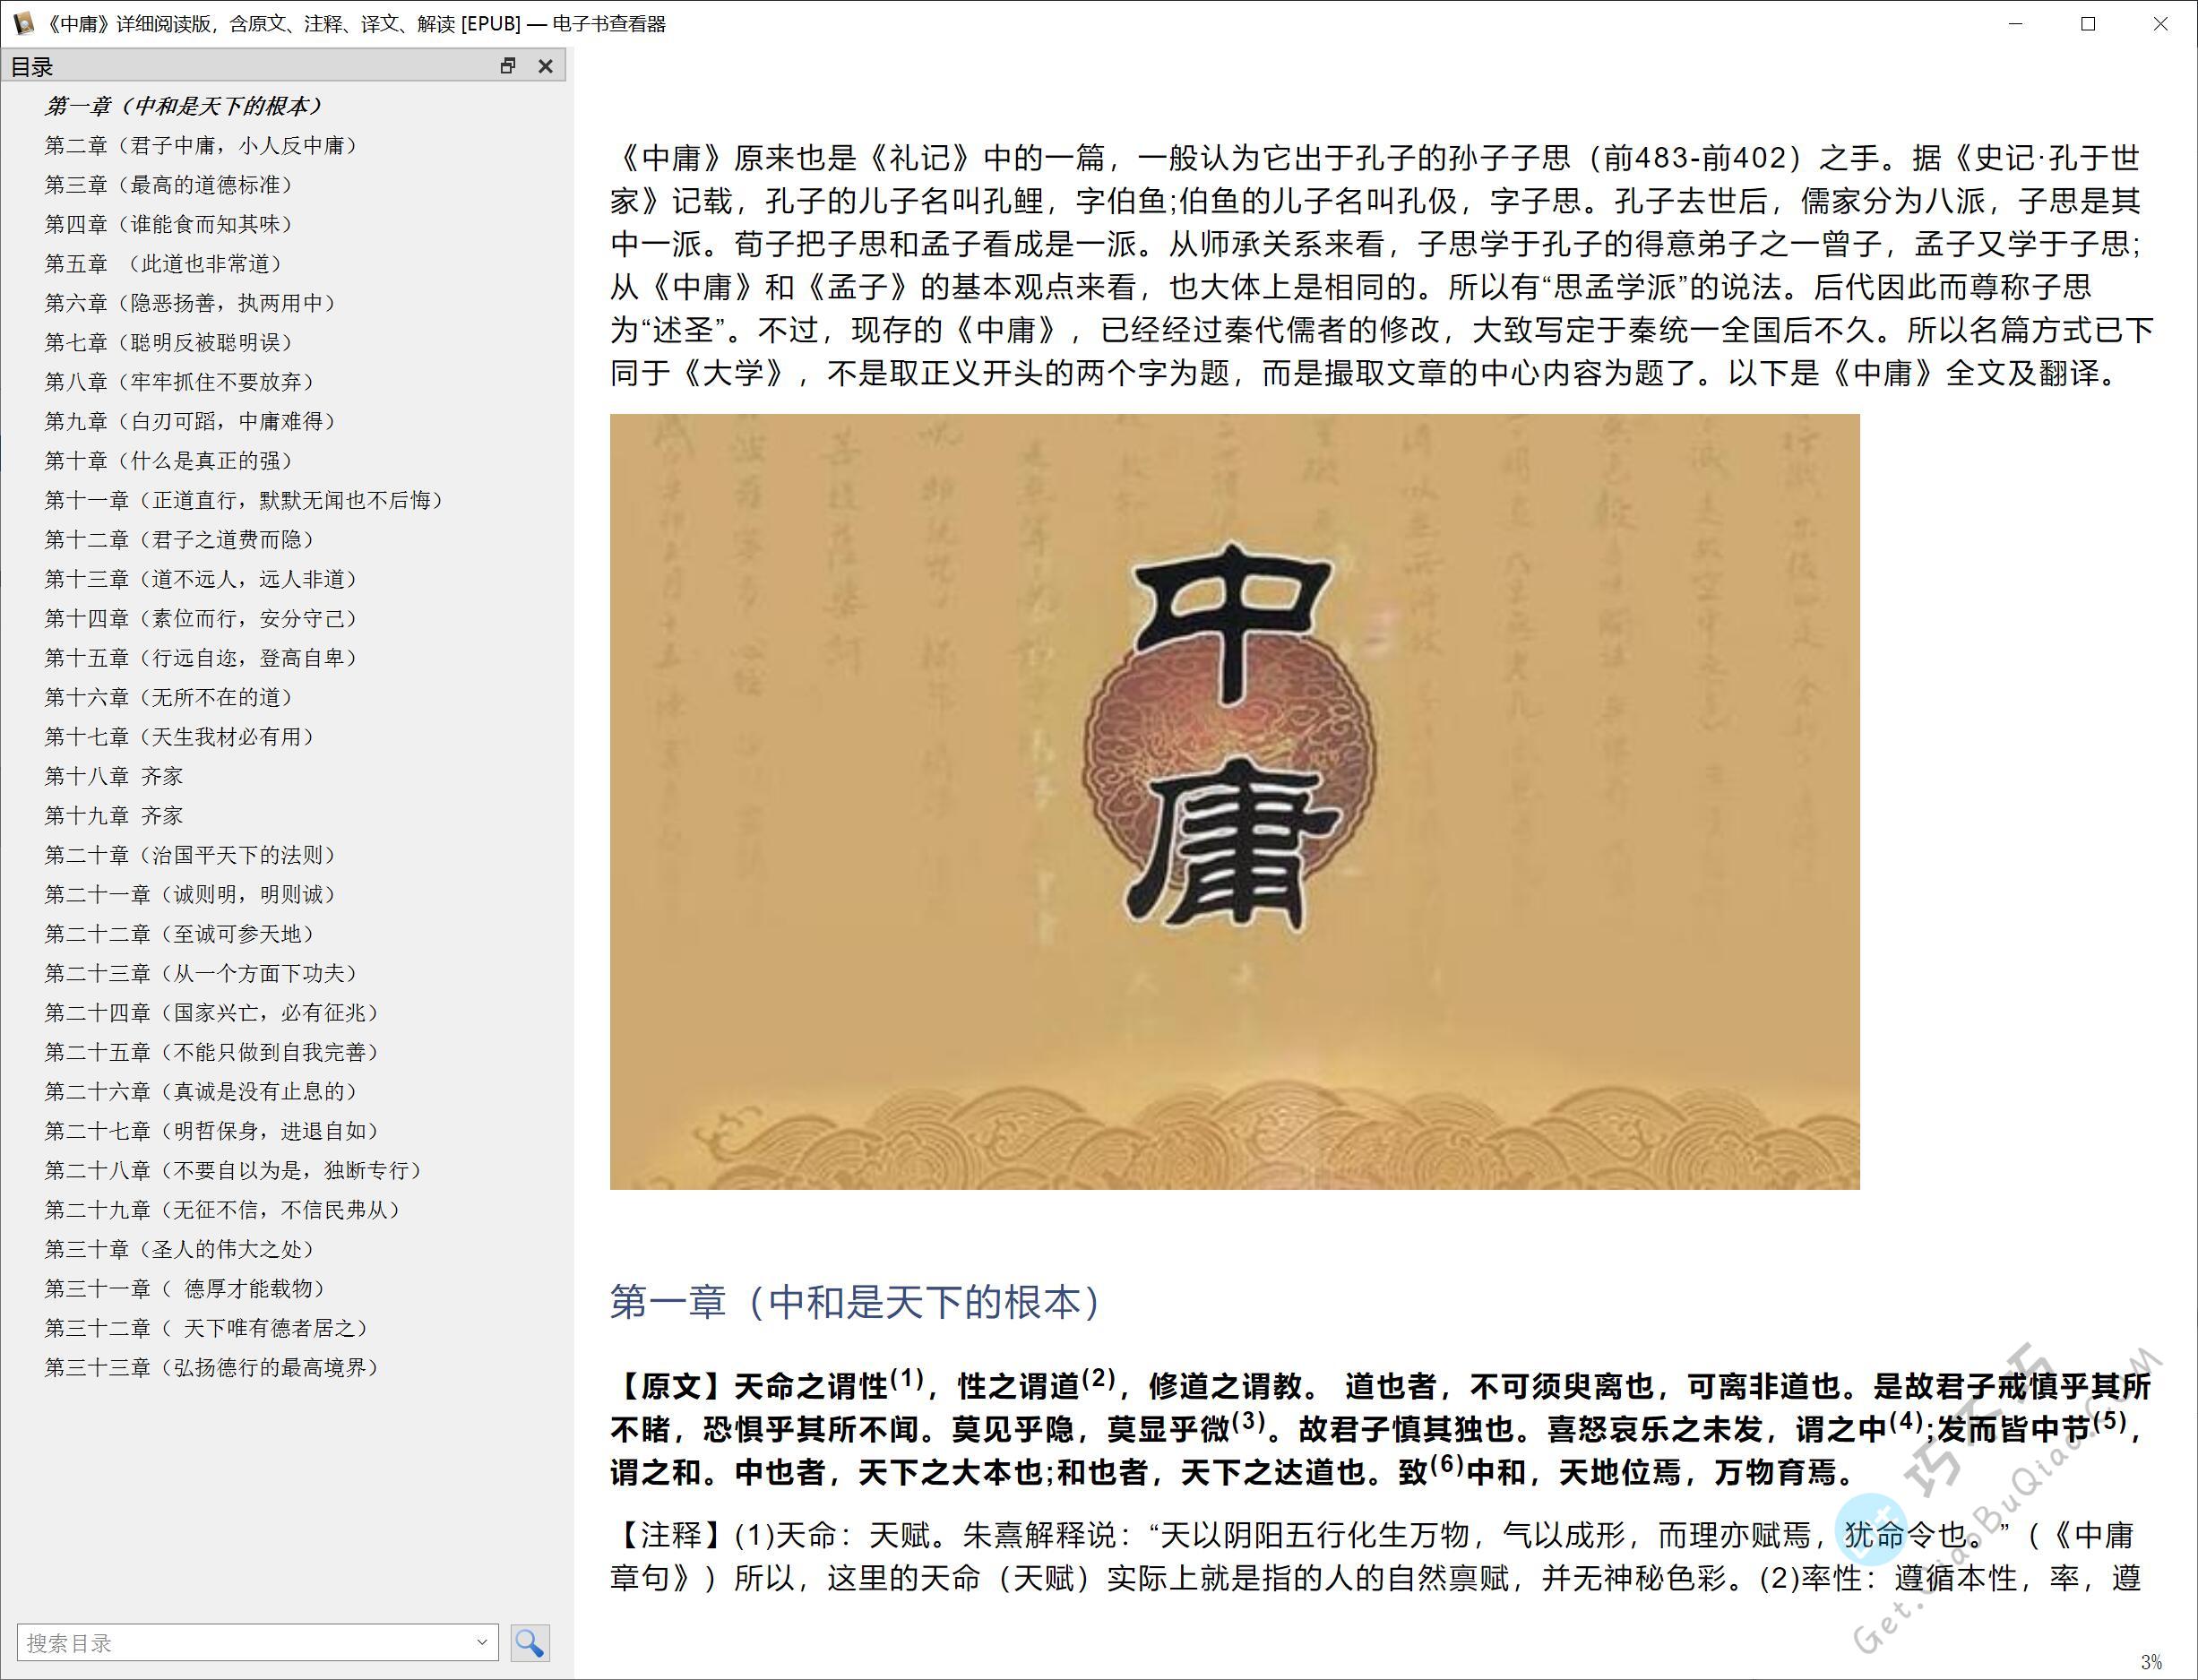 国学儒家学派经典之作《中庸》全文+译文精排PDF+EPUB+WORD下载，有注音、注释、解读可打印修正版